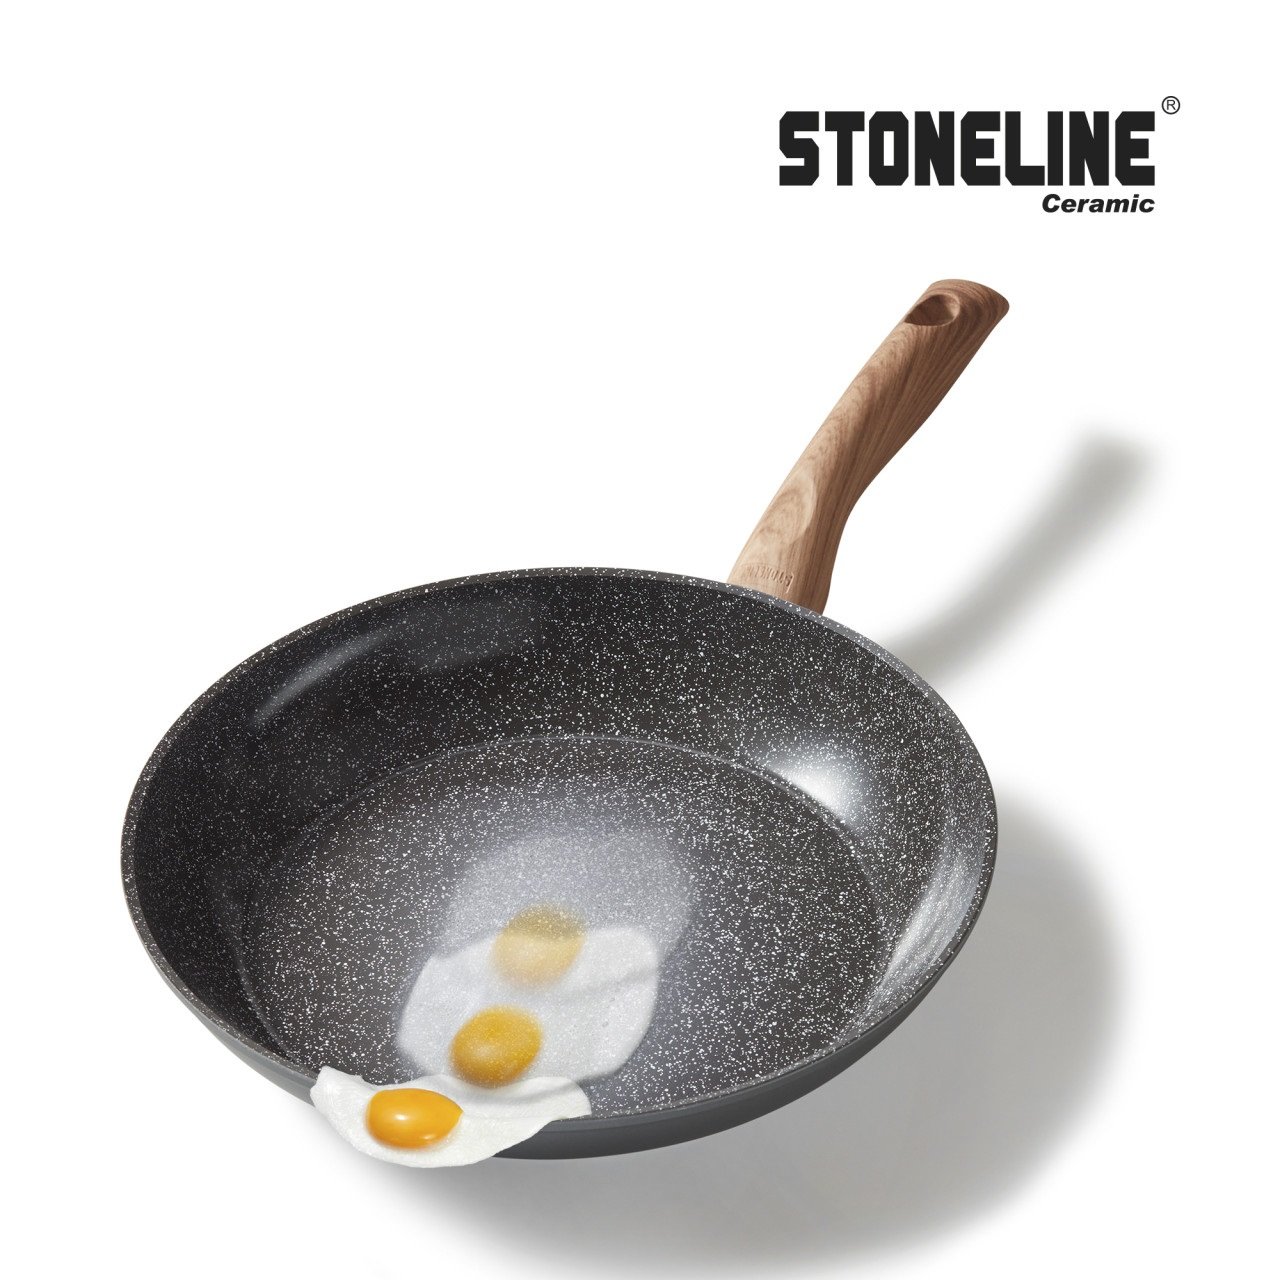 STONELINE® CERAMIC Back to Nature Kochgeschirr-Set, 14-tlg., Keramik-Beschichtung, mit Glasdeckeln, Induktion